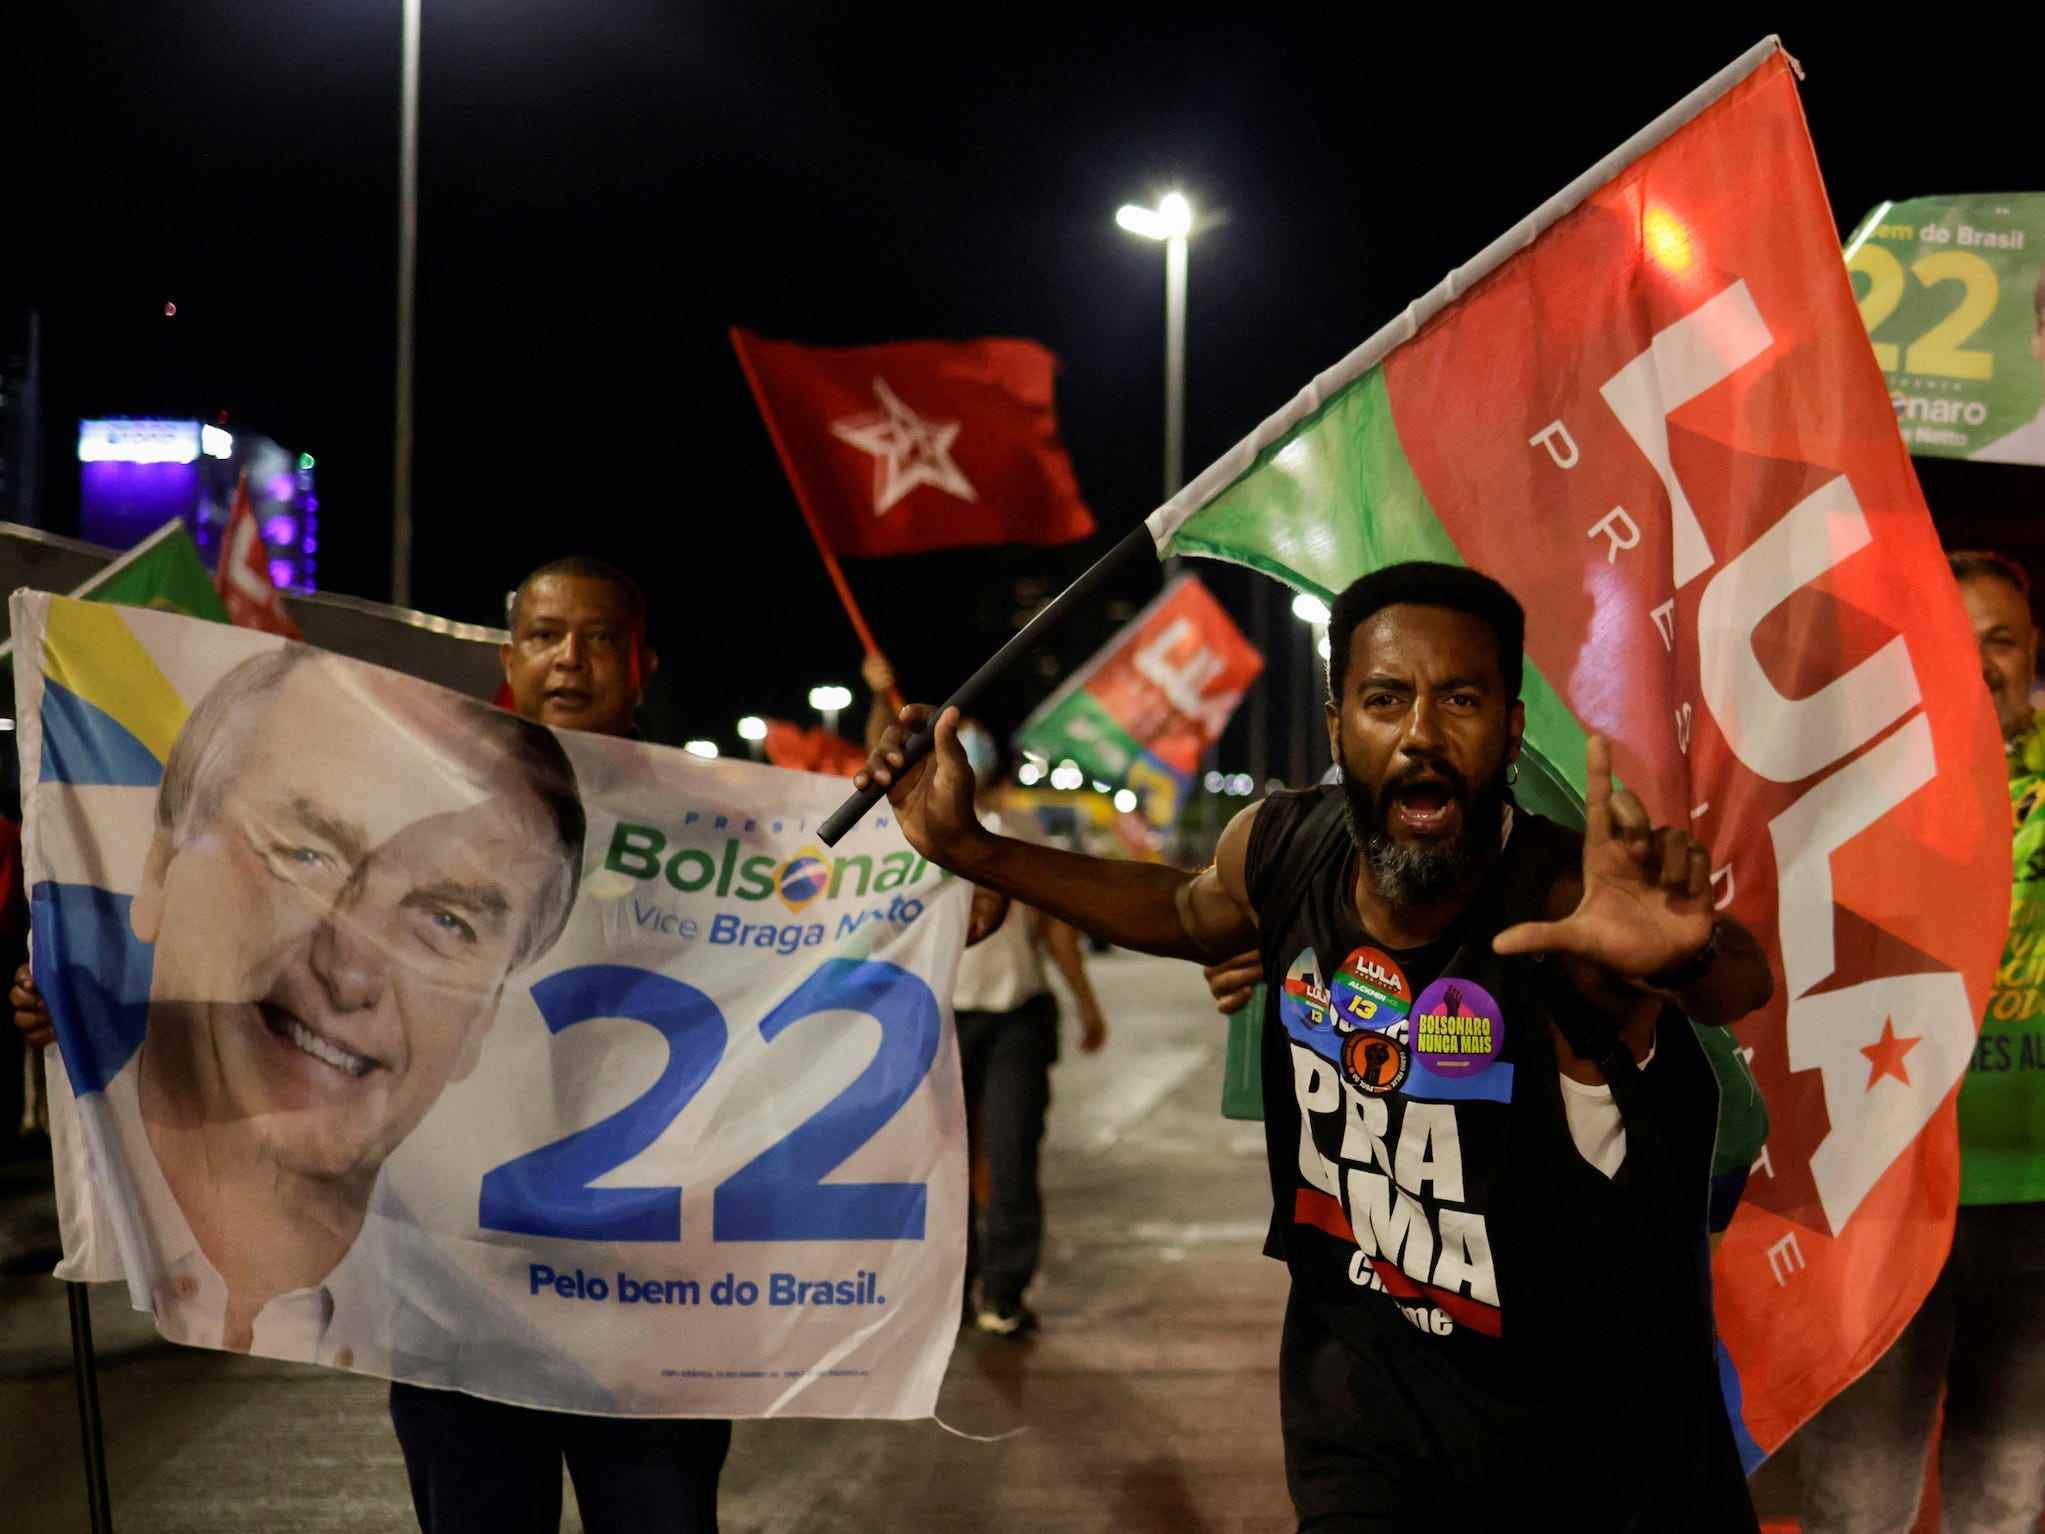 Menge von Menschen, die Fahnen schwenken, einige unterstützen jar bolsonaro, einige unterstützen Luiz Inacio Lula da Silva, ein Mann, der nachts die Finger in L-Form hält